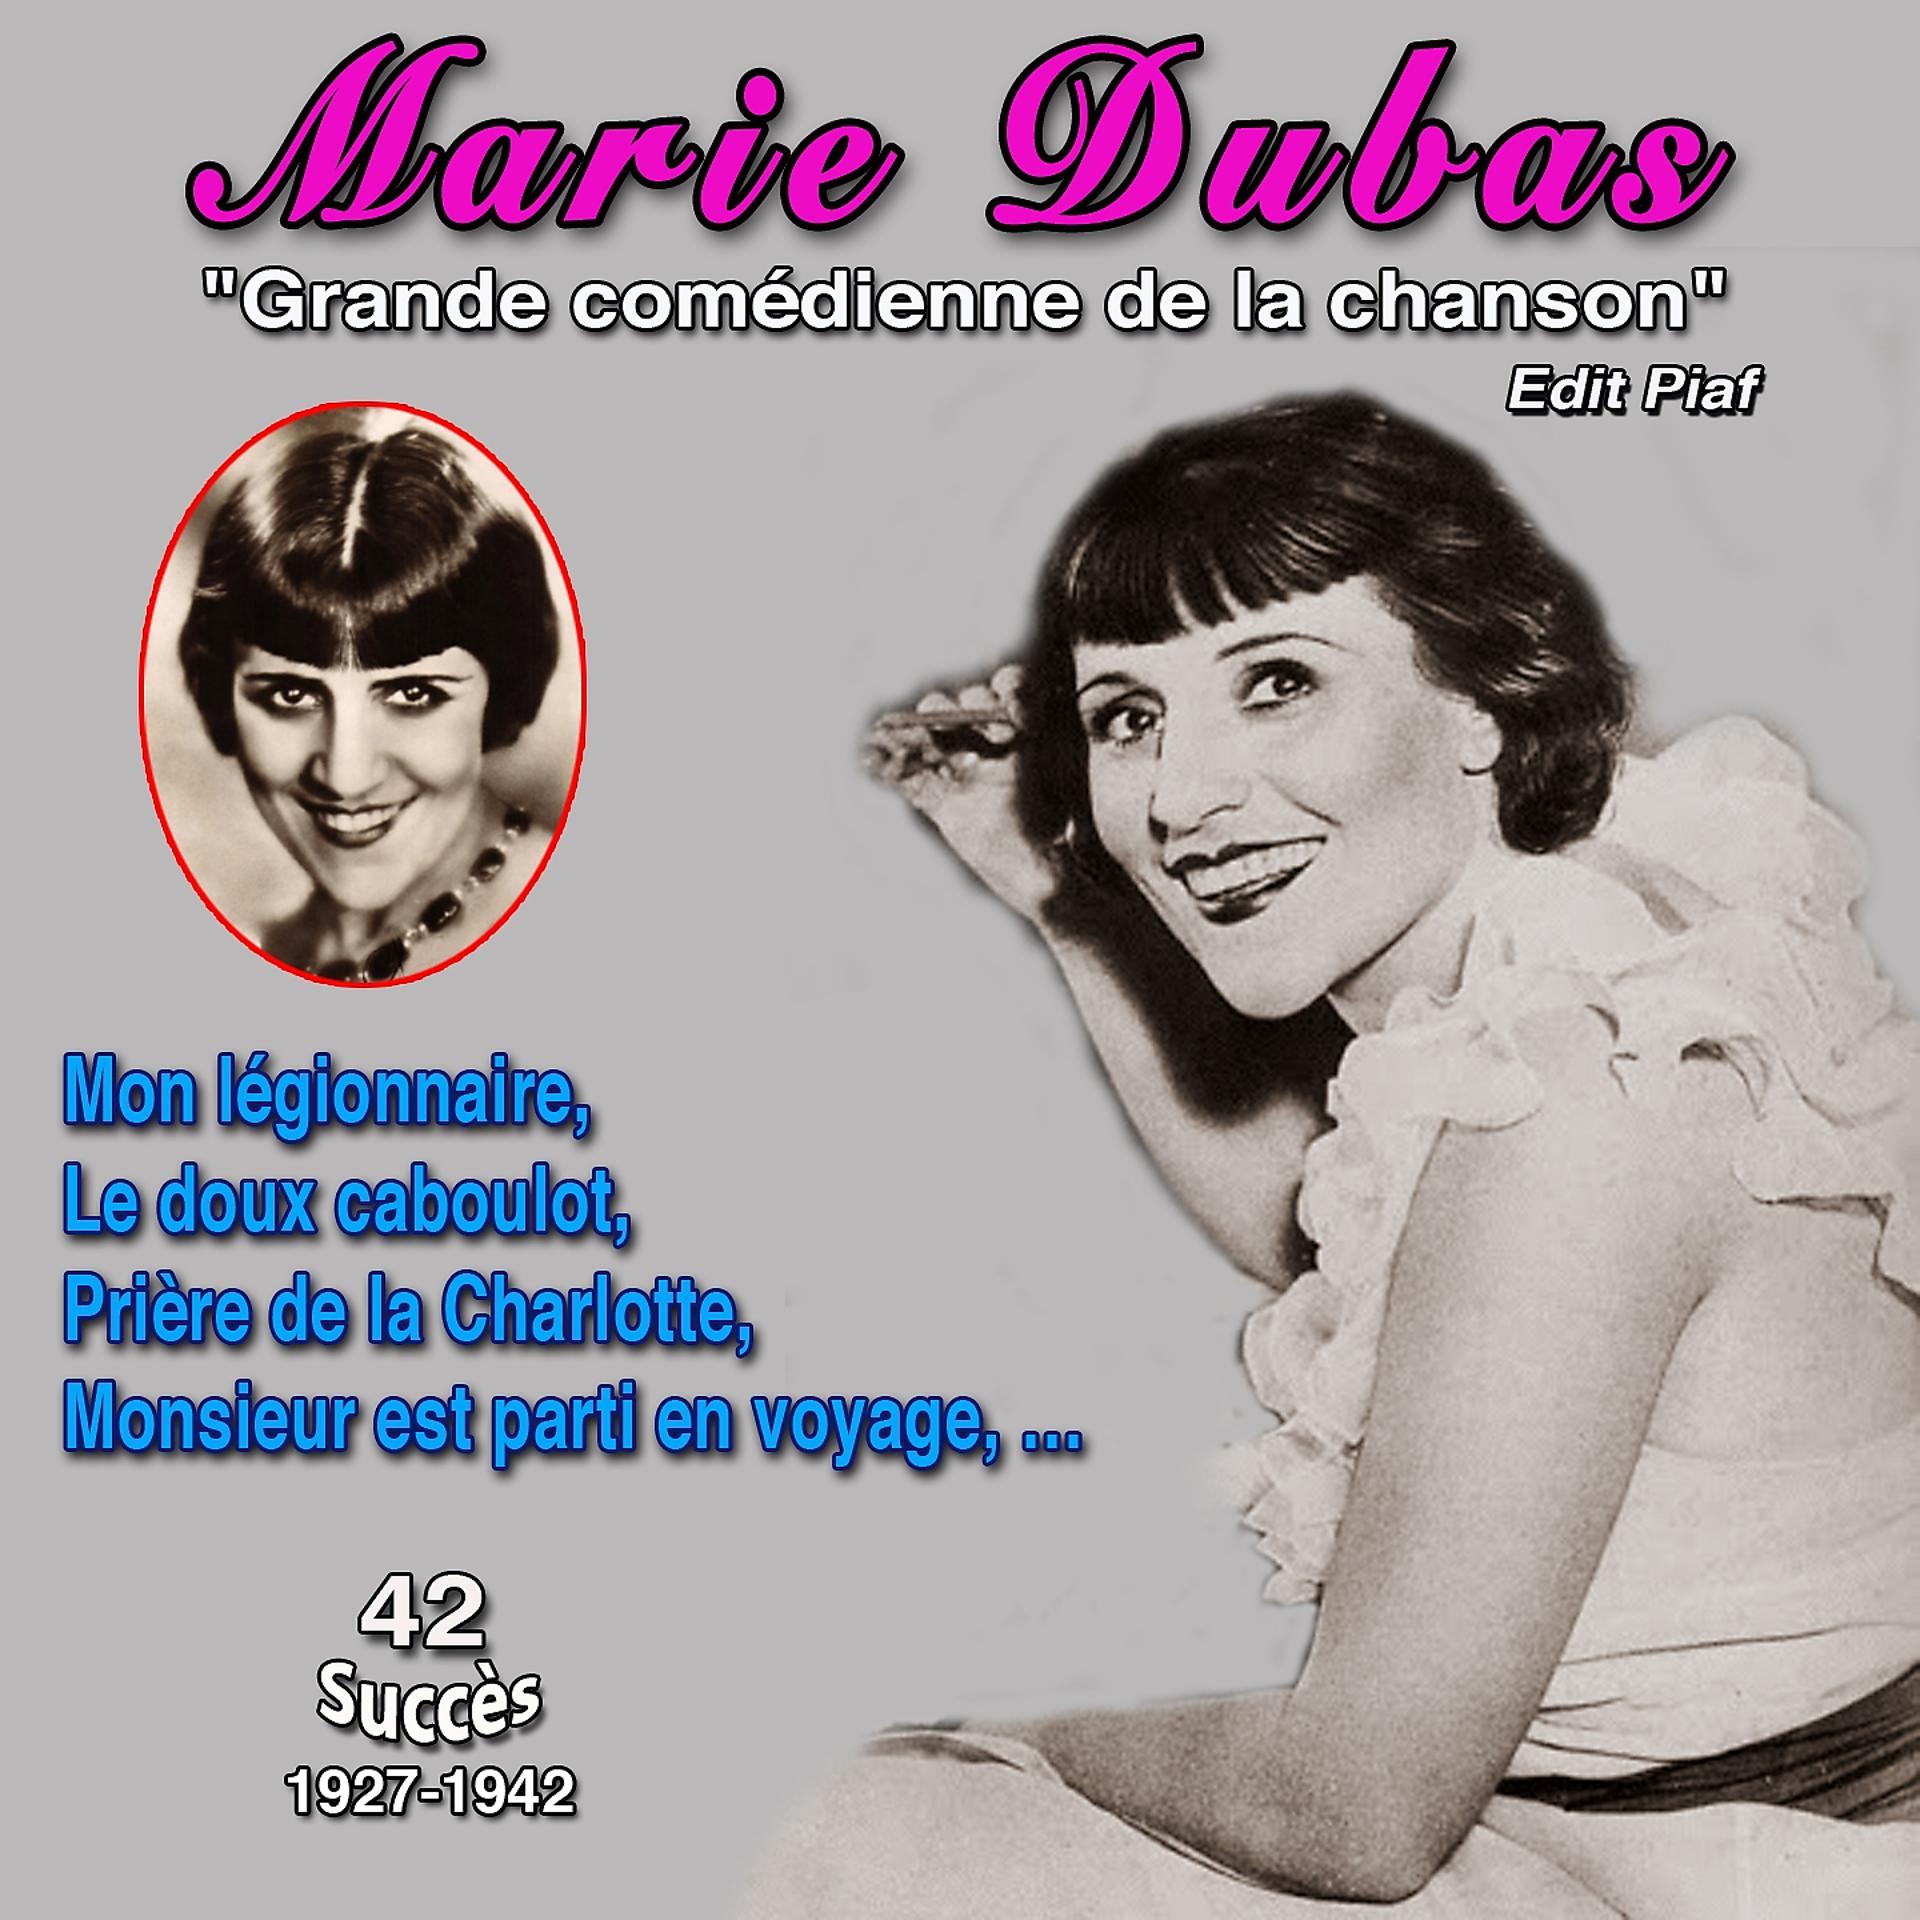 Постер альбома Marie dubas " Grande comédienne de la chanson" Mon légionnaire